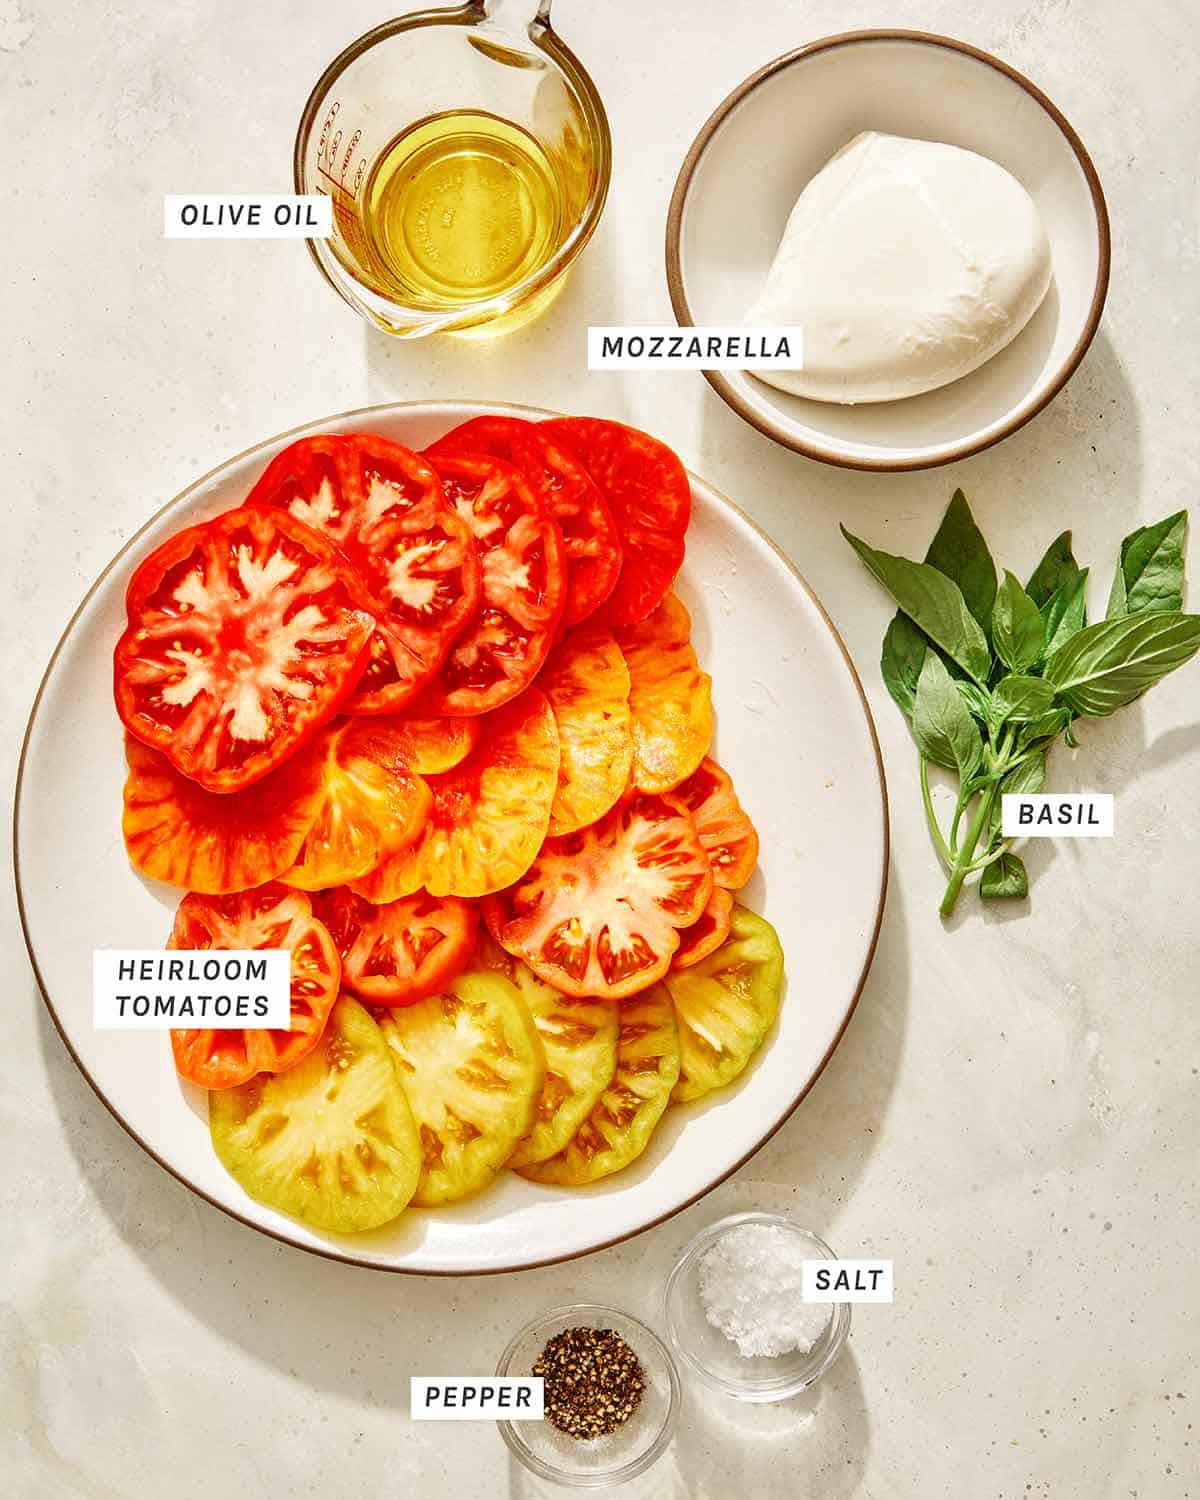 Caprese salad recipe ingredients. 